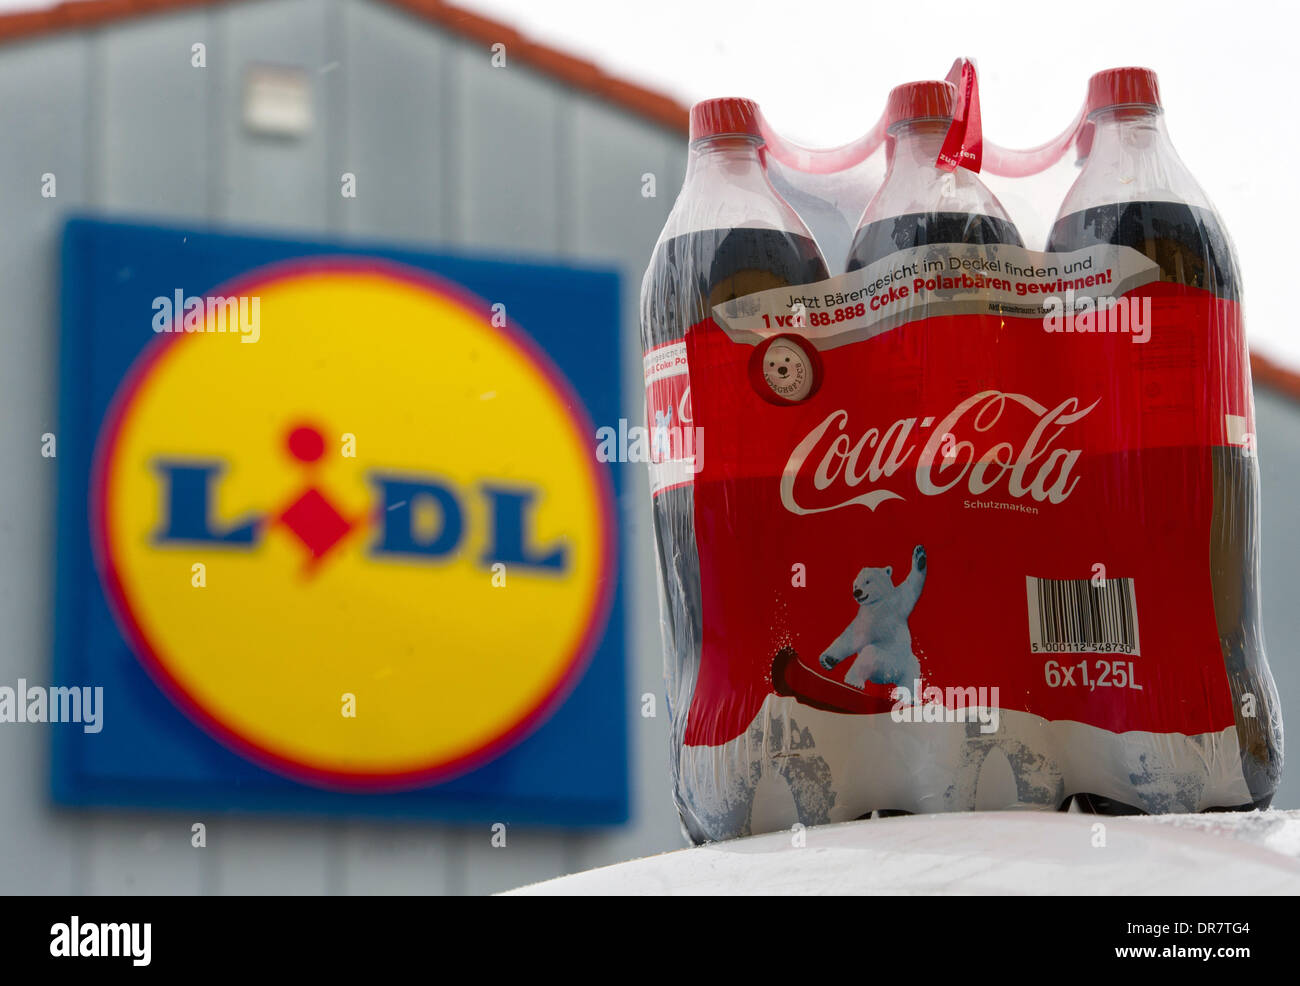 (Illustrazione) Coca Cola bottiglie sono raffigurate nella parte anteriore di un negozio della catena di supermercati Lidl in Beeskow, Germania, 21 gennaio 2014. Lidl ha smesso di vendere prodotti della coca-cola brand. Il portavoce della società di bevande ha confermato la notizia. Foto: Patrick Pleul/dpa Foto Stock